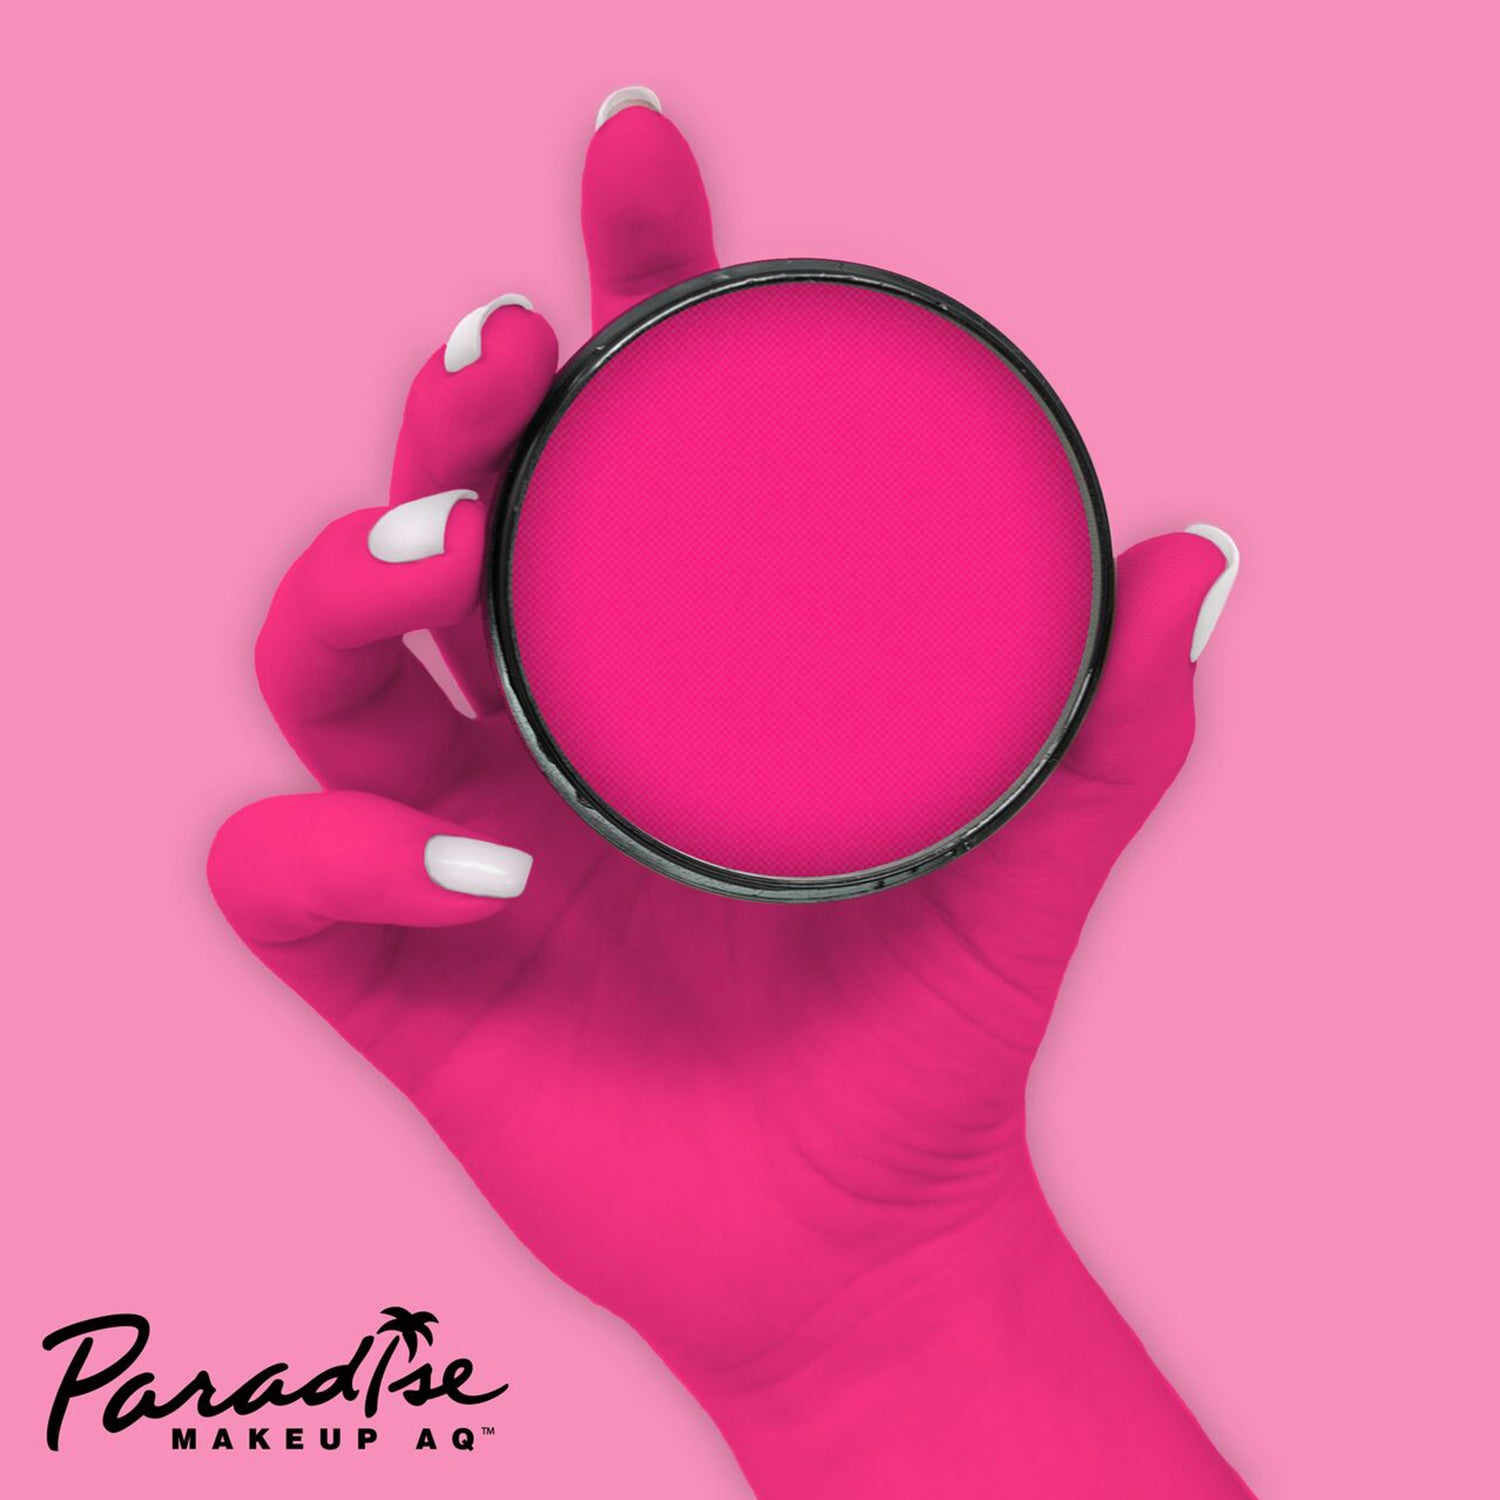 Mehron Paradise Face Paints - Intergalactic (Neon Pink), 1.4 oz